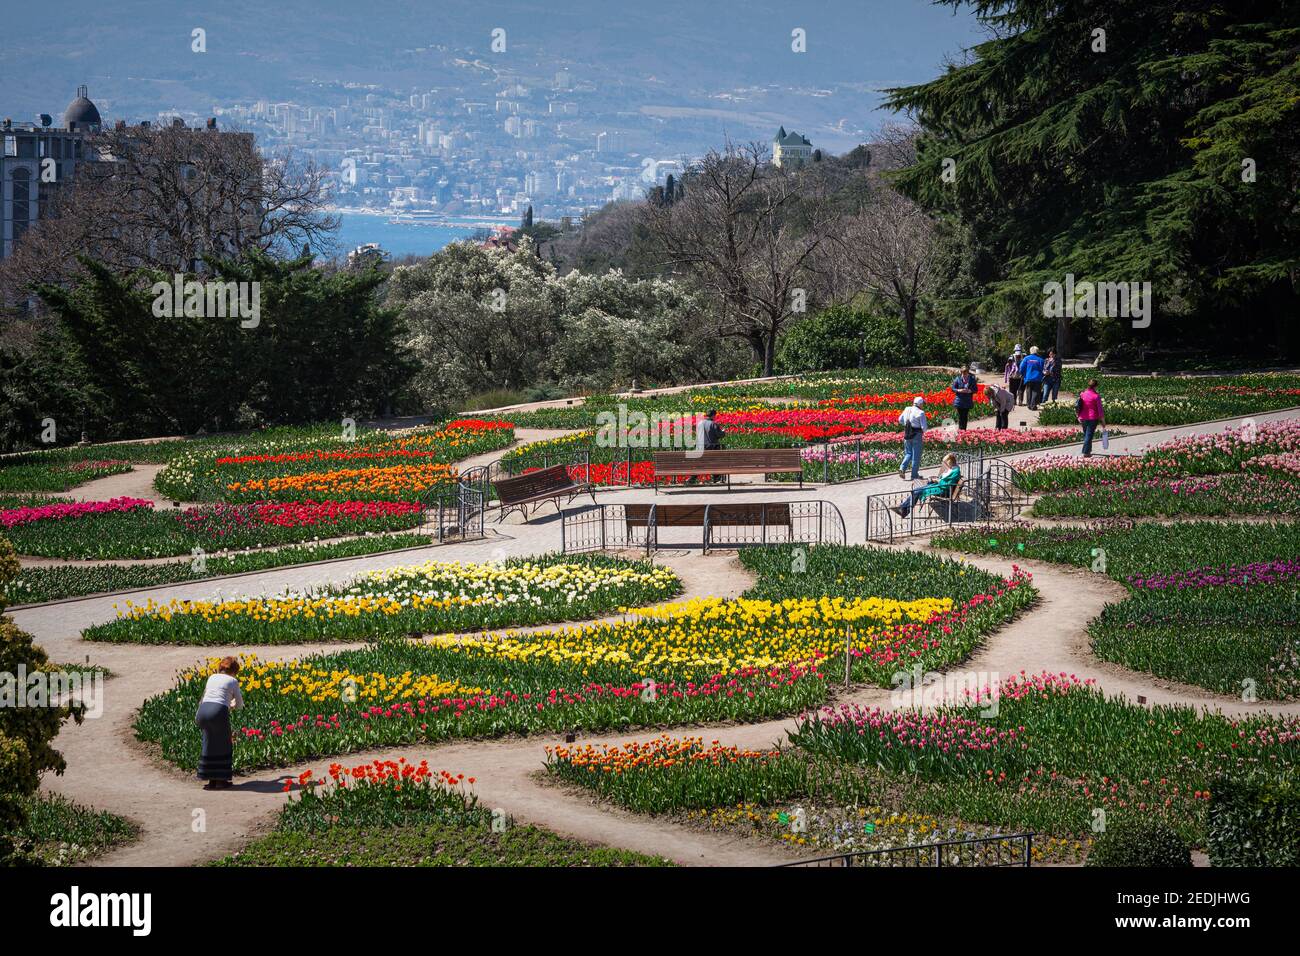 Die Tulpenparade im Nikitski Botanischen Garten Jalta am 07. April 2018. Die Menschen gehen zwischen den bunten Blumenbeeten spazieren, machen Fotos von Blumen. C Stockfoto